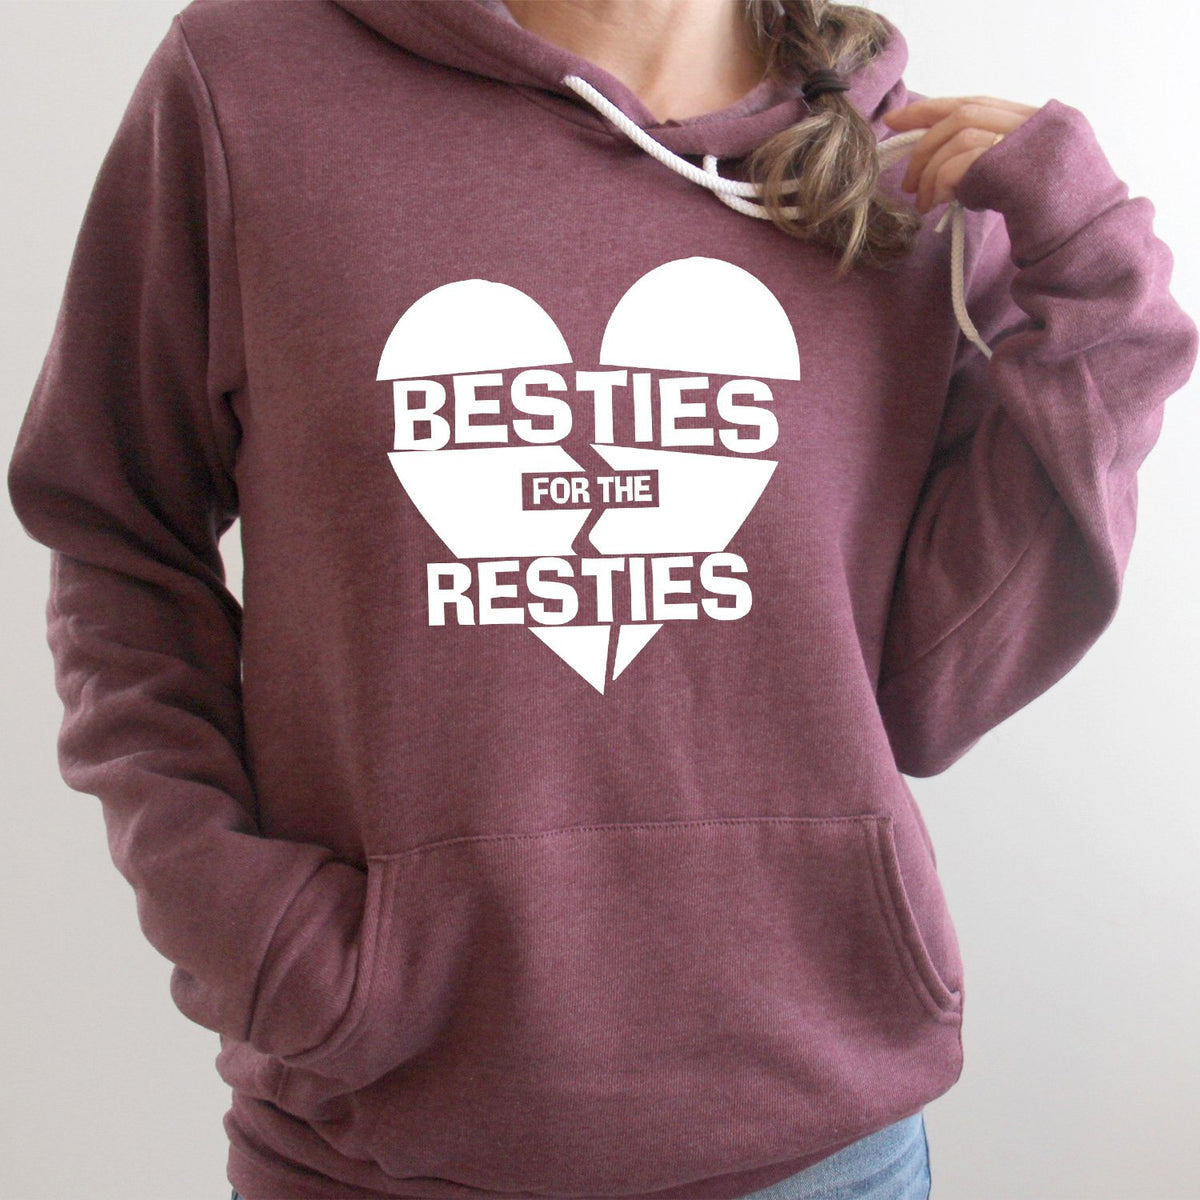 Besties For The Resties - Hoodie Sweatshirt